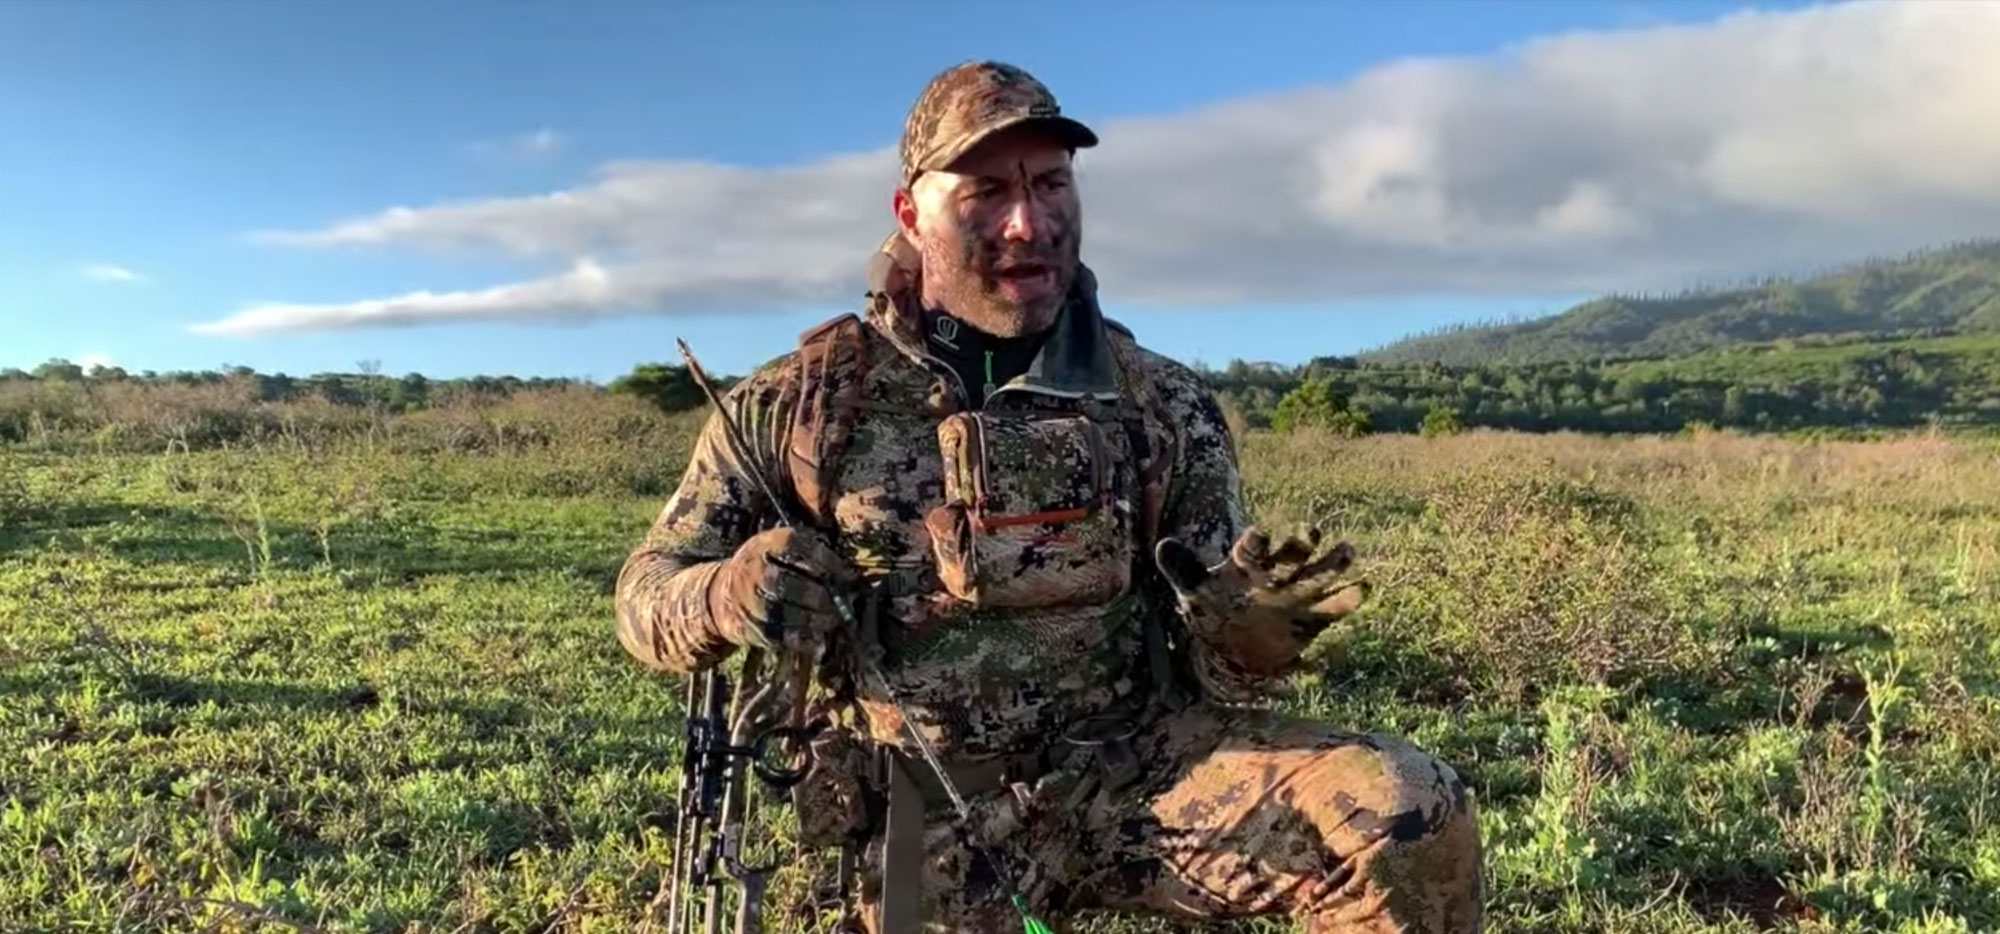 Hawaiian Axis Deer Hunt with Joe Rogan